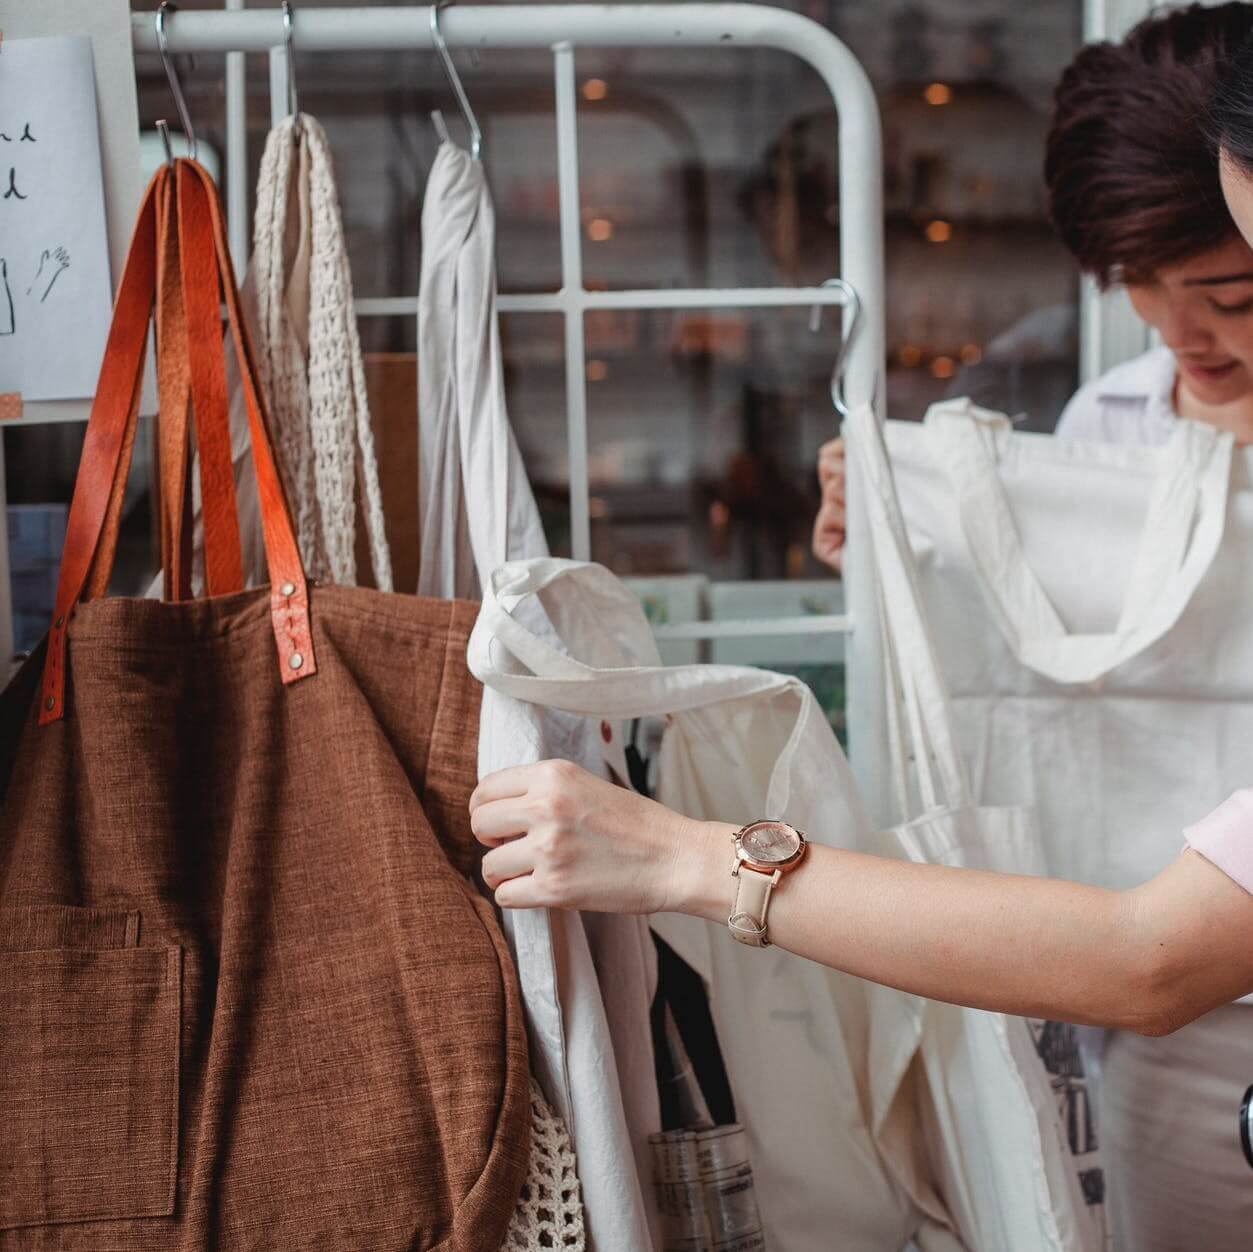 trendy young asian women choosing cotton bags in fashion boutique